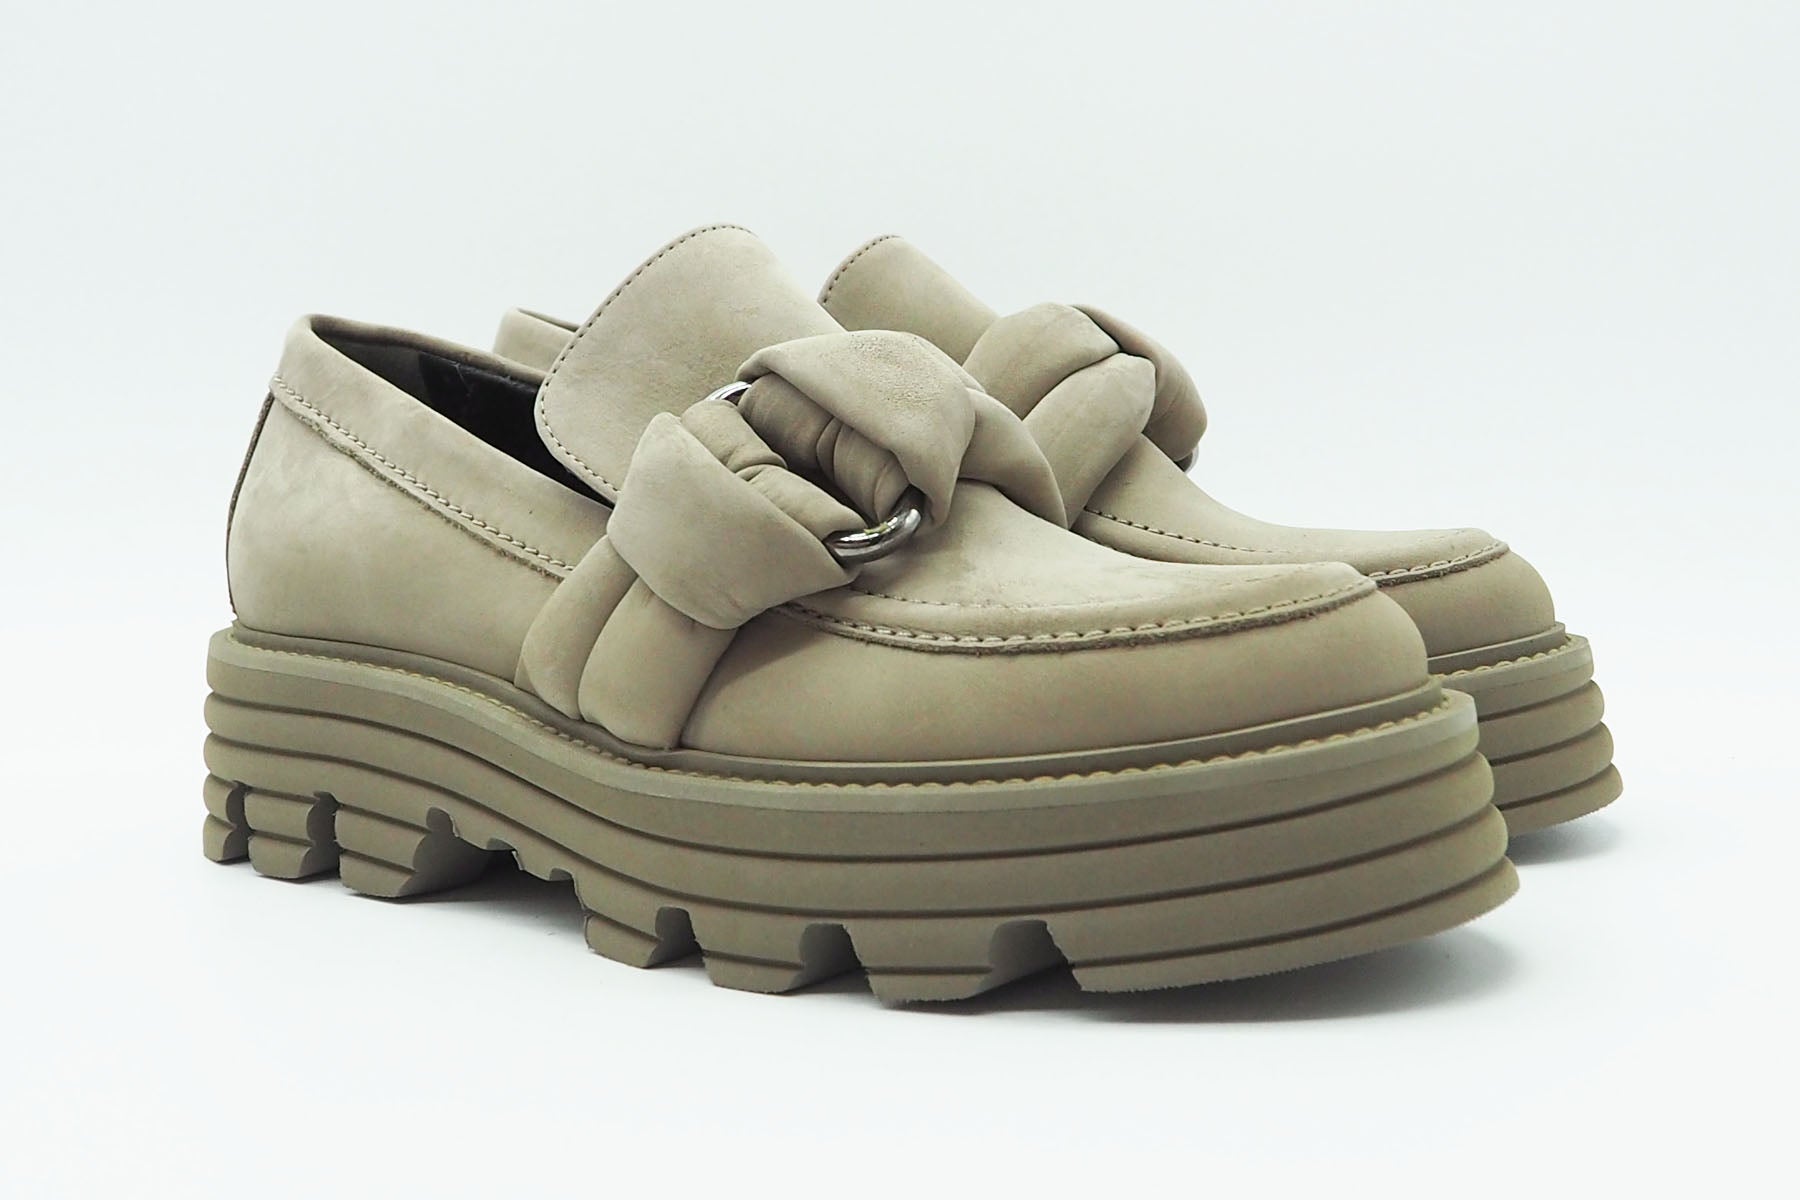 Damen Loafer mit flacher Plateau-Sohle aus Nubukleder in Sand- Absatz 4cm Damen Loafers & Schnürer Kennel & Schmenger